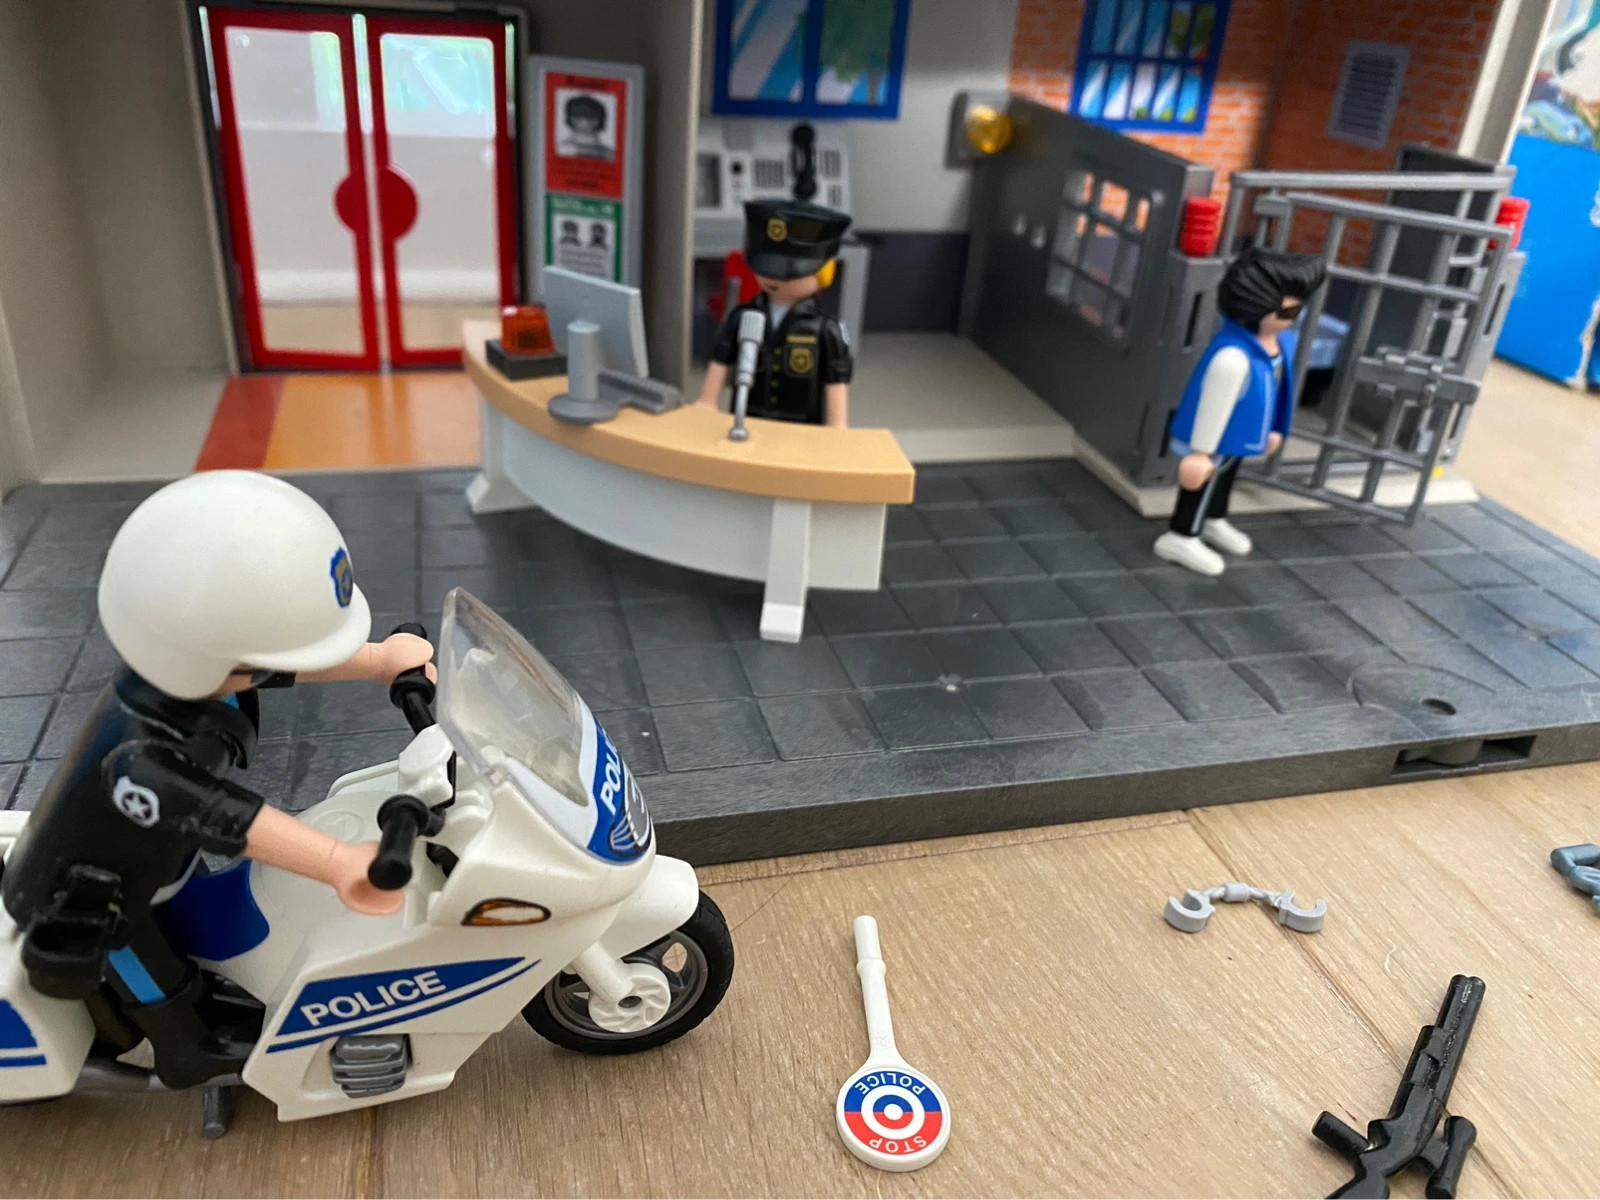 Playmobil 5299 City Action - Commissariat de police avec prison - Comparer  avec